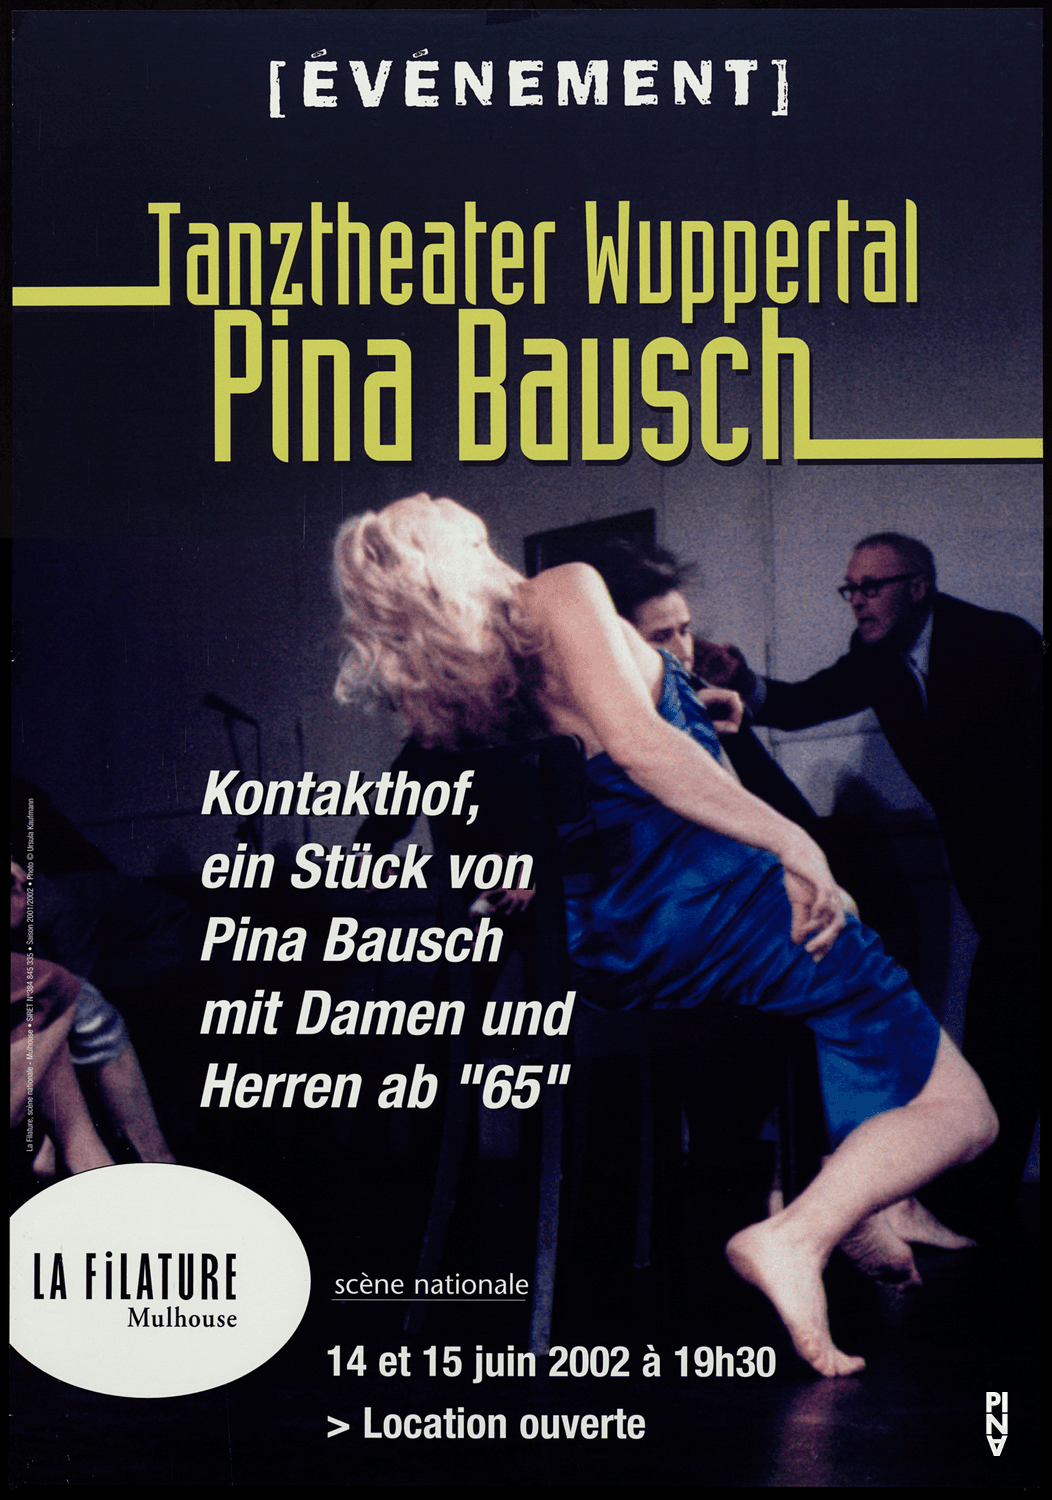 Plakat zu „Kontakthof. Mit Damen und Herren ab „65““ von Pina Bausch in Mulhouse, 14.06.2002–15.06.2002